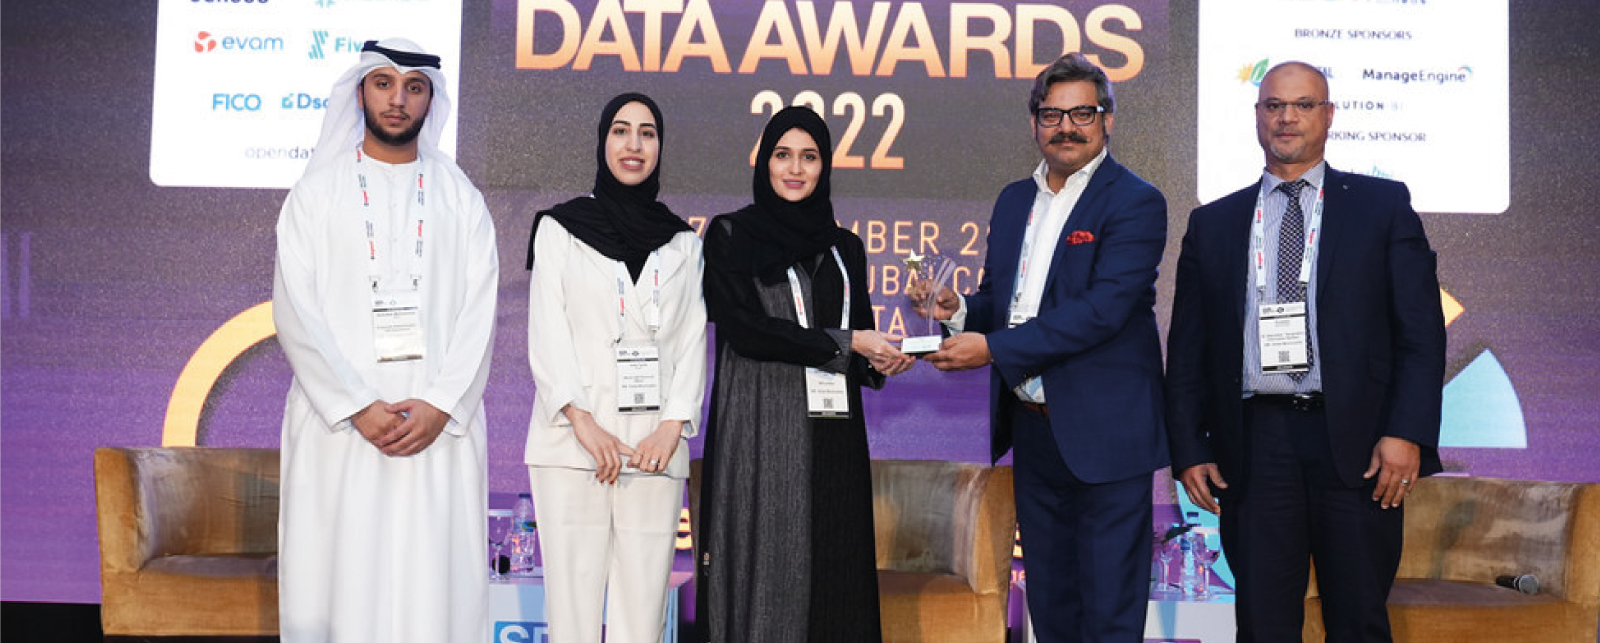 جائزة بطل البيانات الذكية